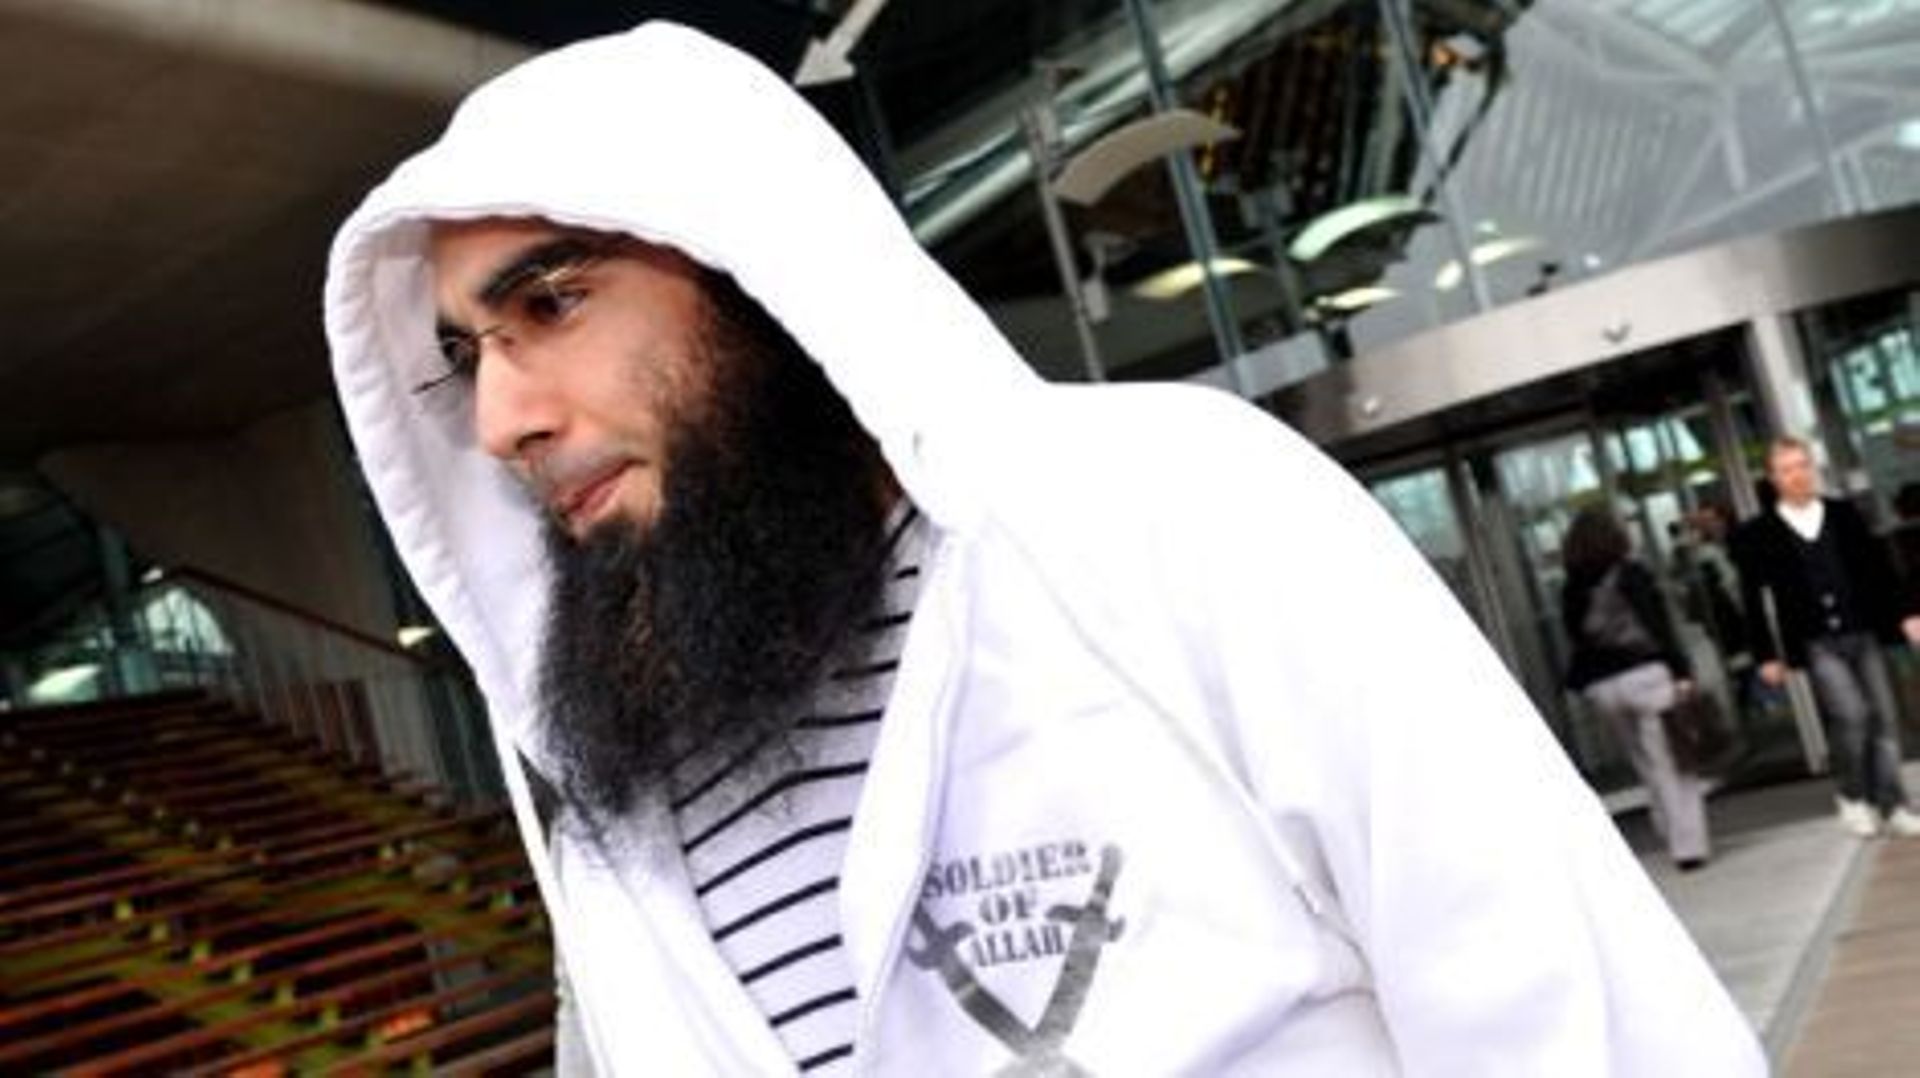 Procès Sharia4Belgium: Belkacem condamné à 12 ans de prison